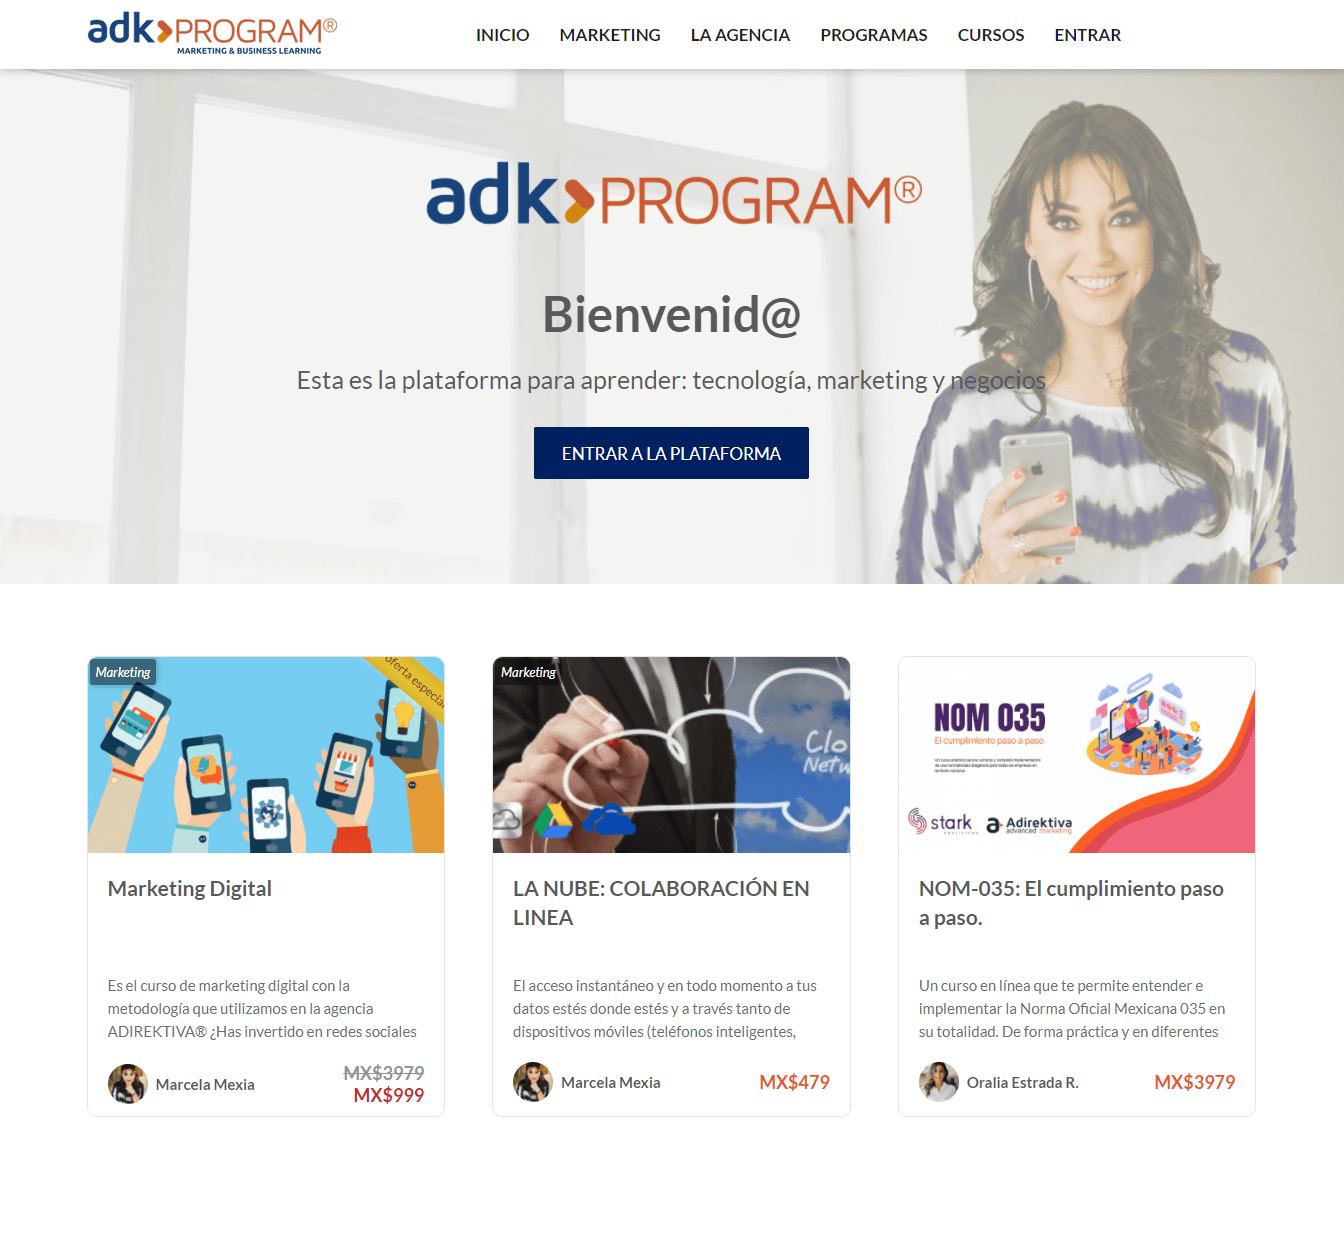 adk program screenshot of landing page